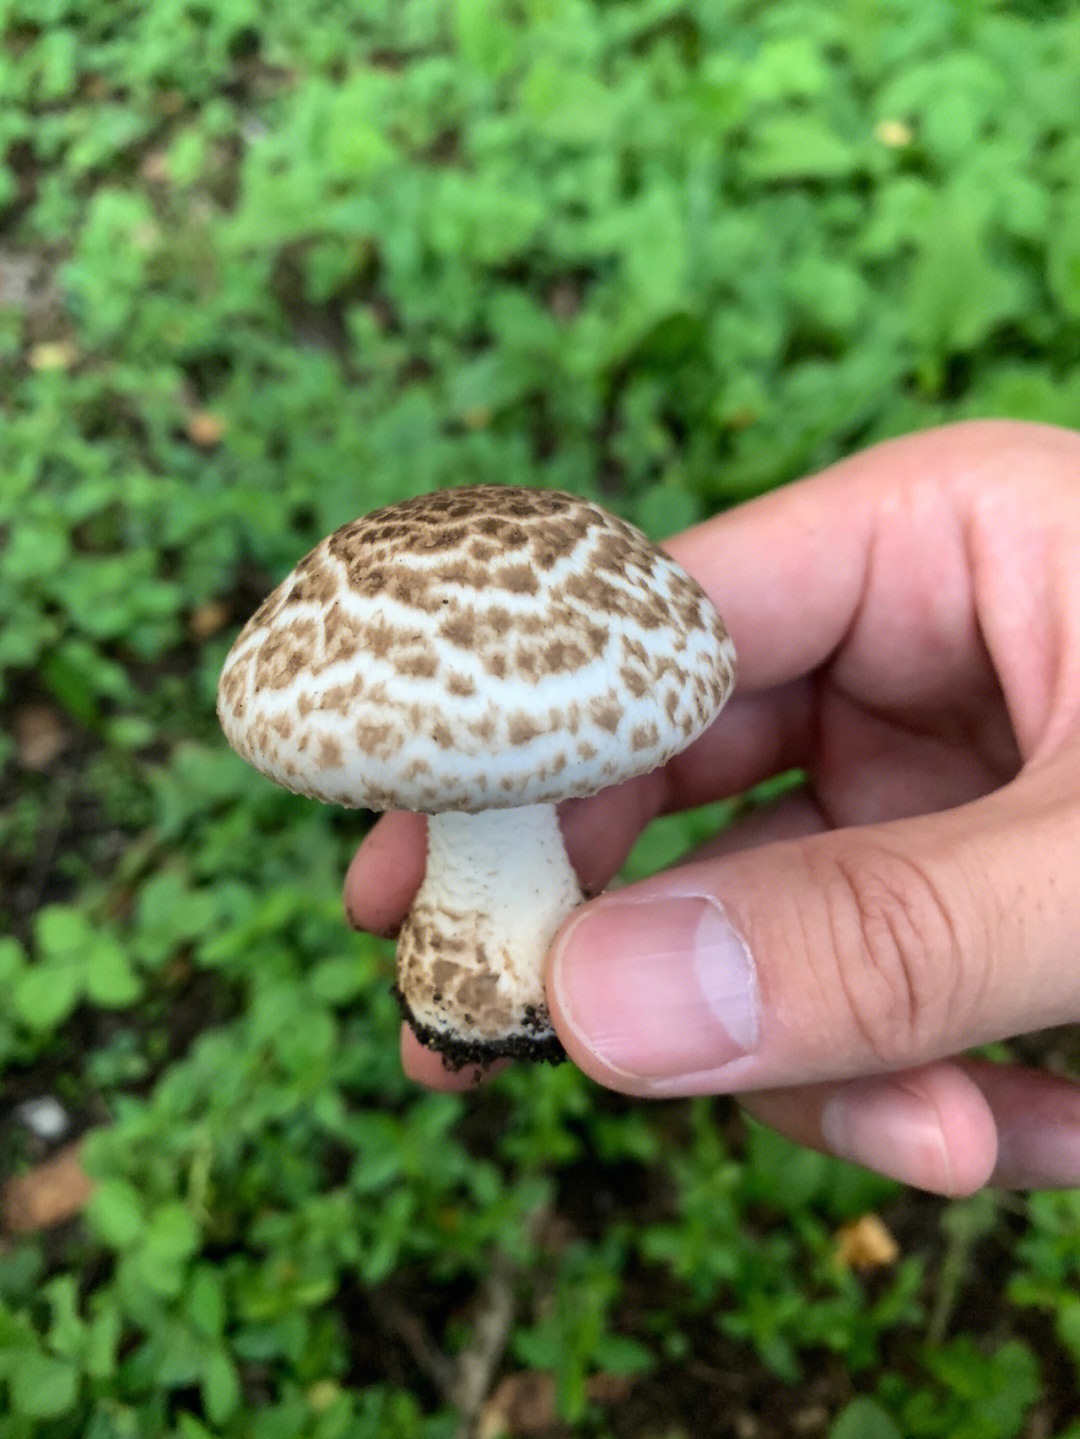 这个是假根蘑菇吗